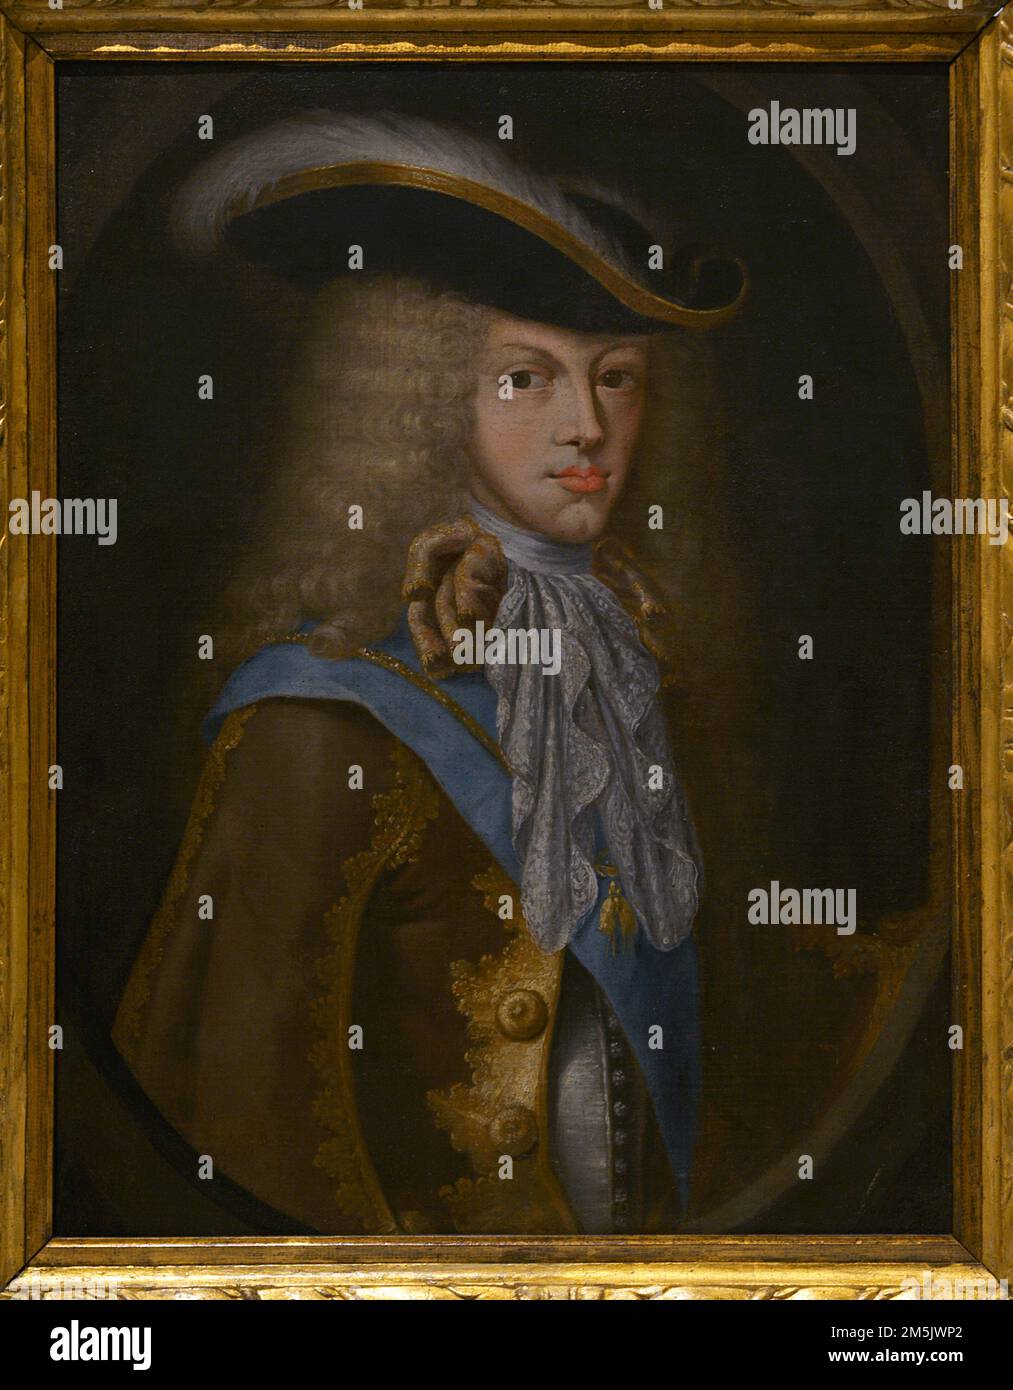 Philip V (1683-1746). Roi d'Espagne (1700-1746). Portrait. Anonyme. Première moitié du 18th siècle. Huile sur toile. Musée de l'armée. Tolède, Espagne. Banque D'Images